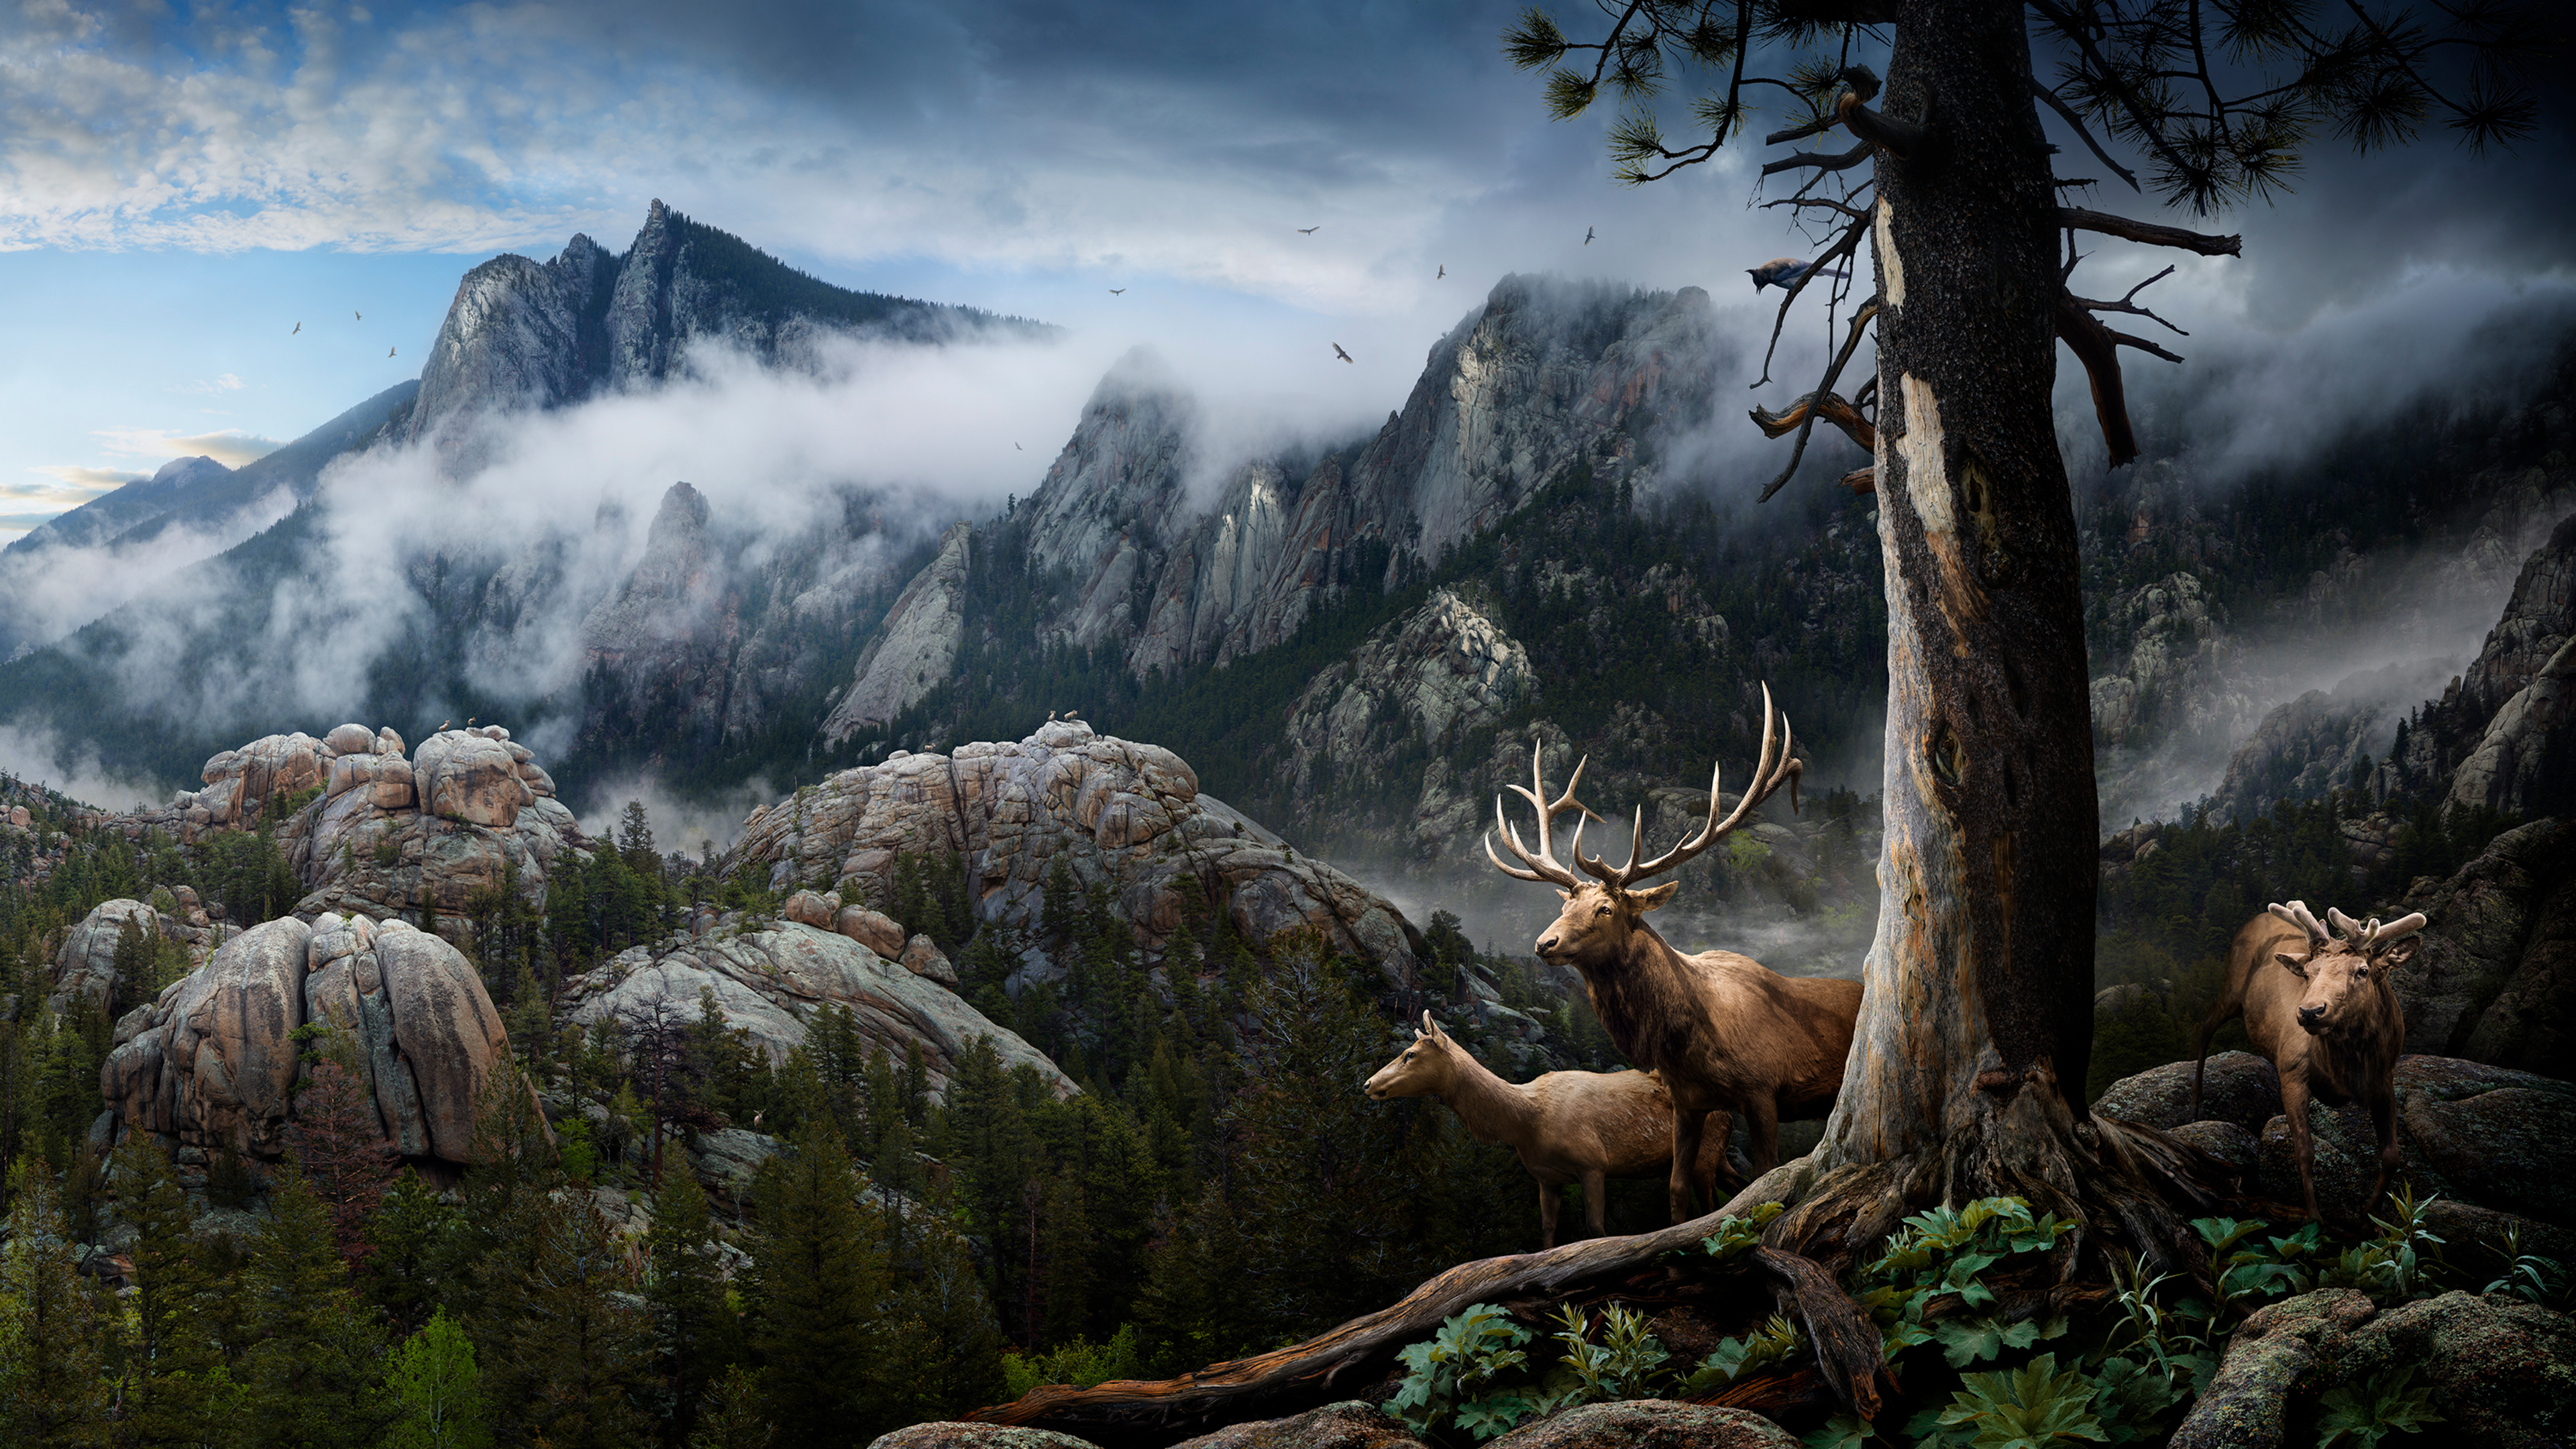 Elk Forest Landscape Conservation 4k HD 4k Wallpaper, Image, Background, Photo and Picture